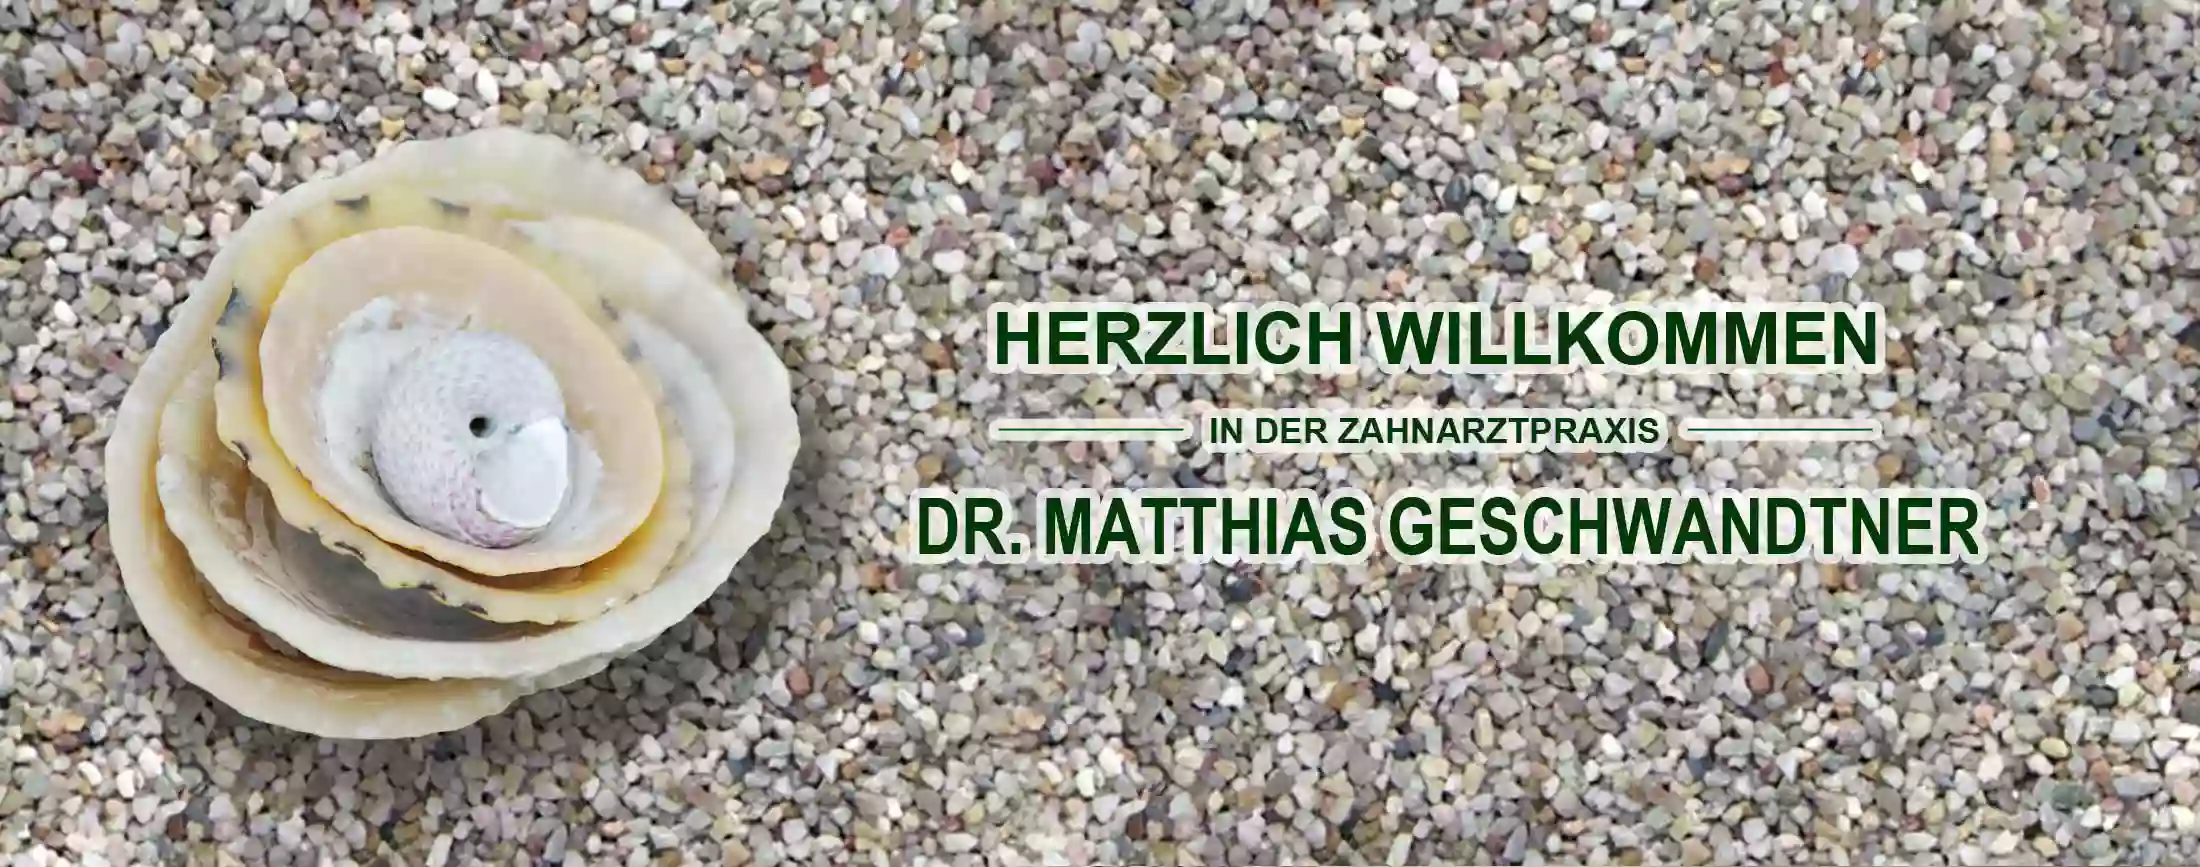 Dr. Matthias Geschwandtner